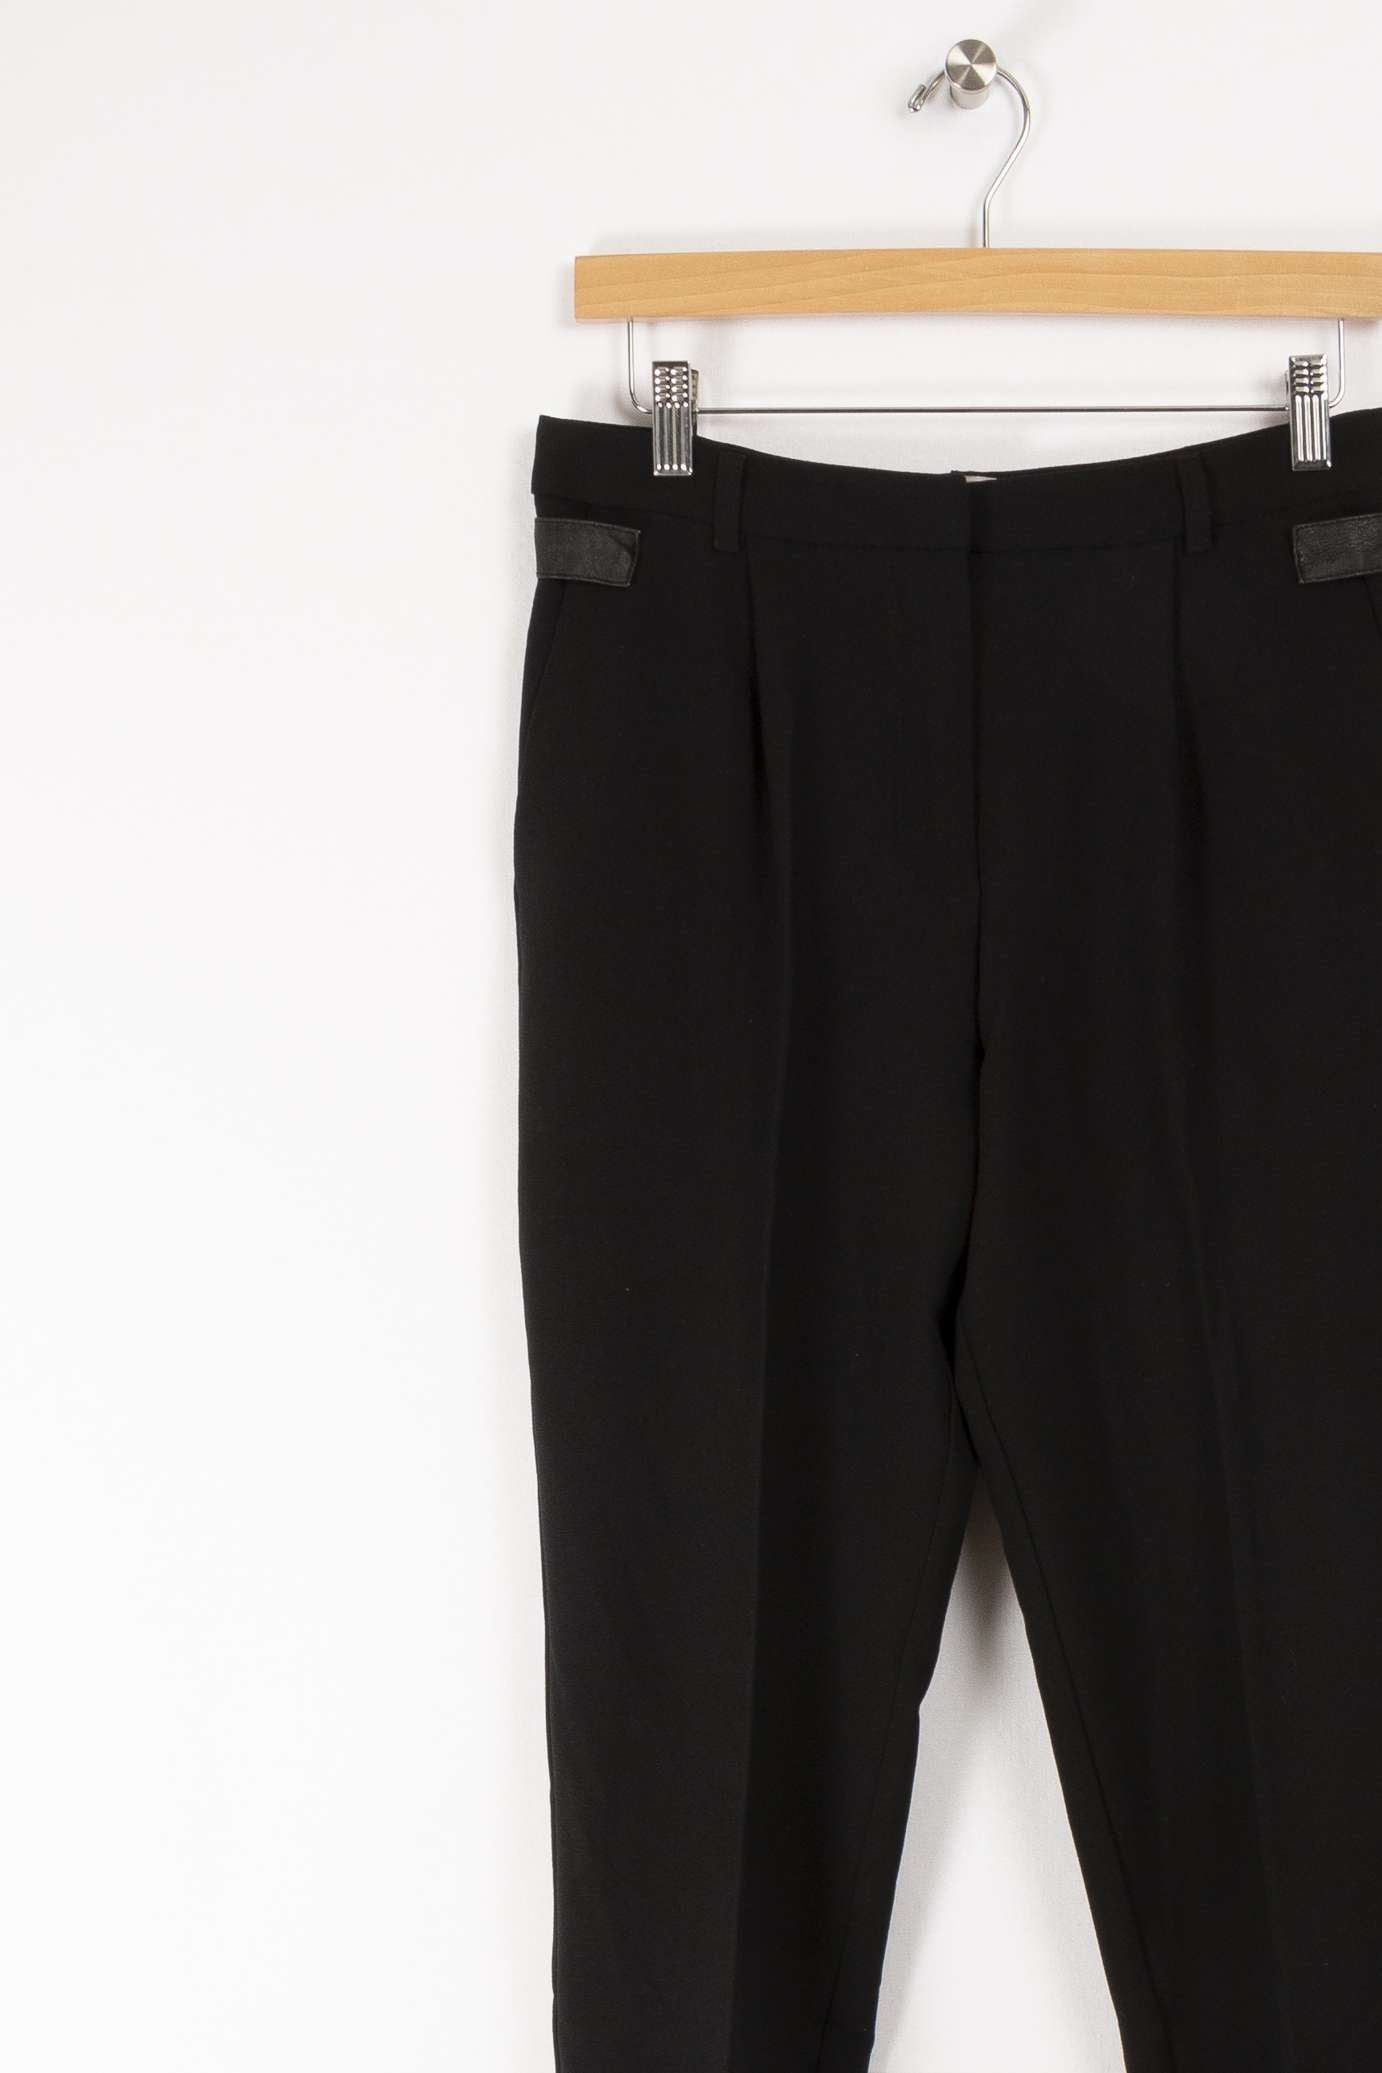 Pantalon noir - 38